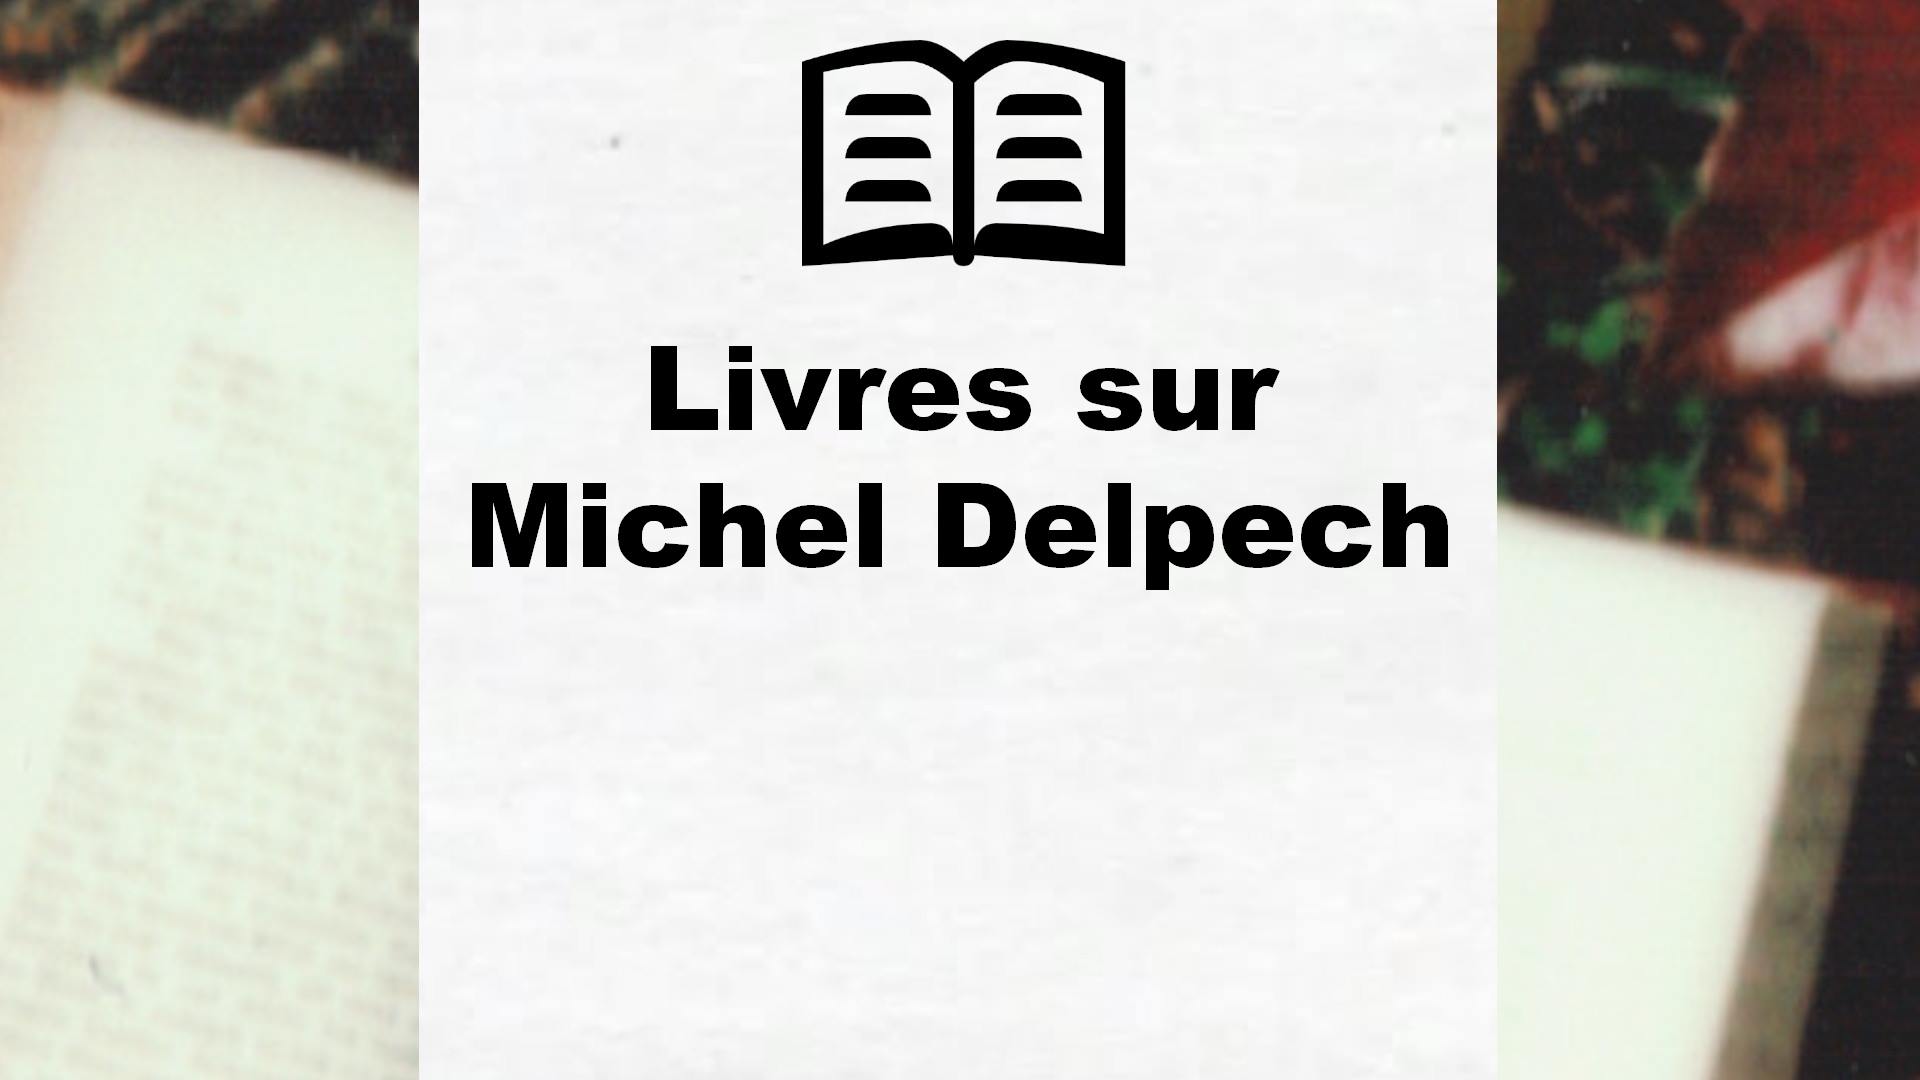 Livres sur Michel Delpech